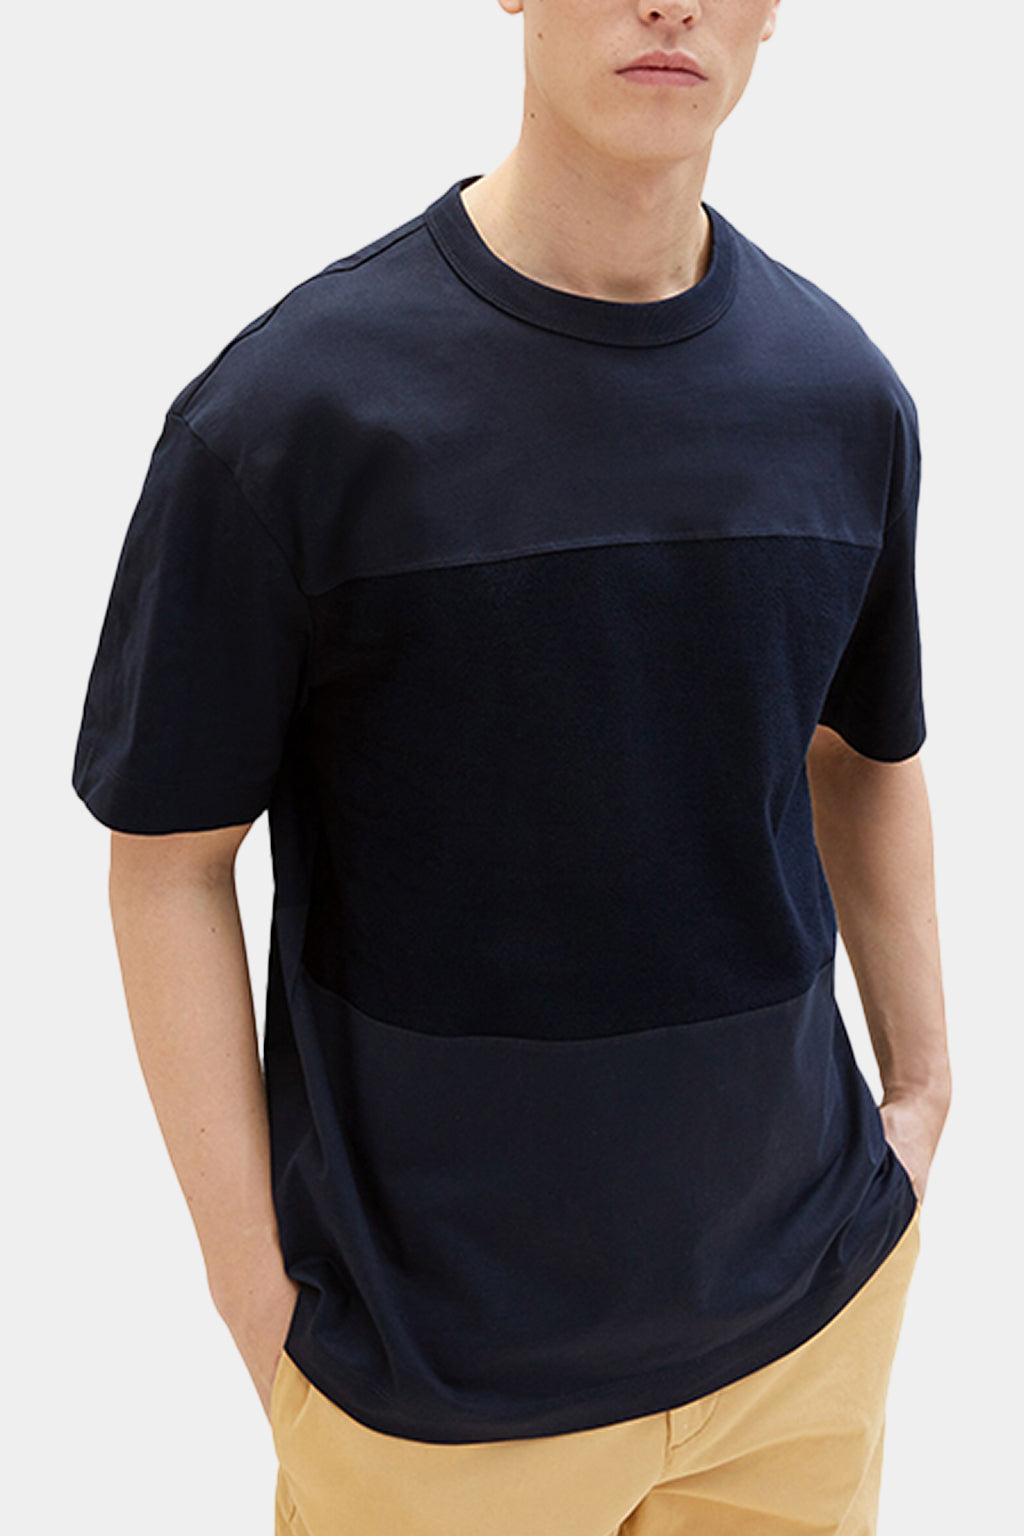 Tom Tailor - Denim Men's T-shirt